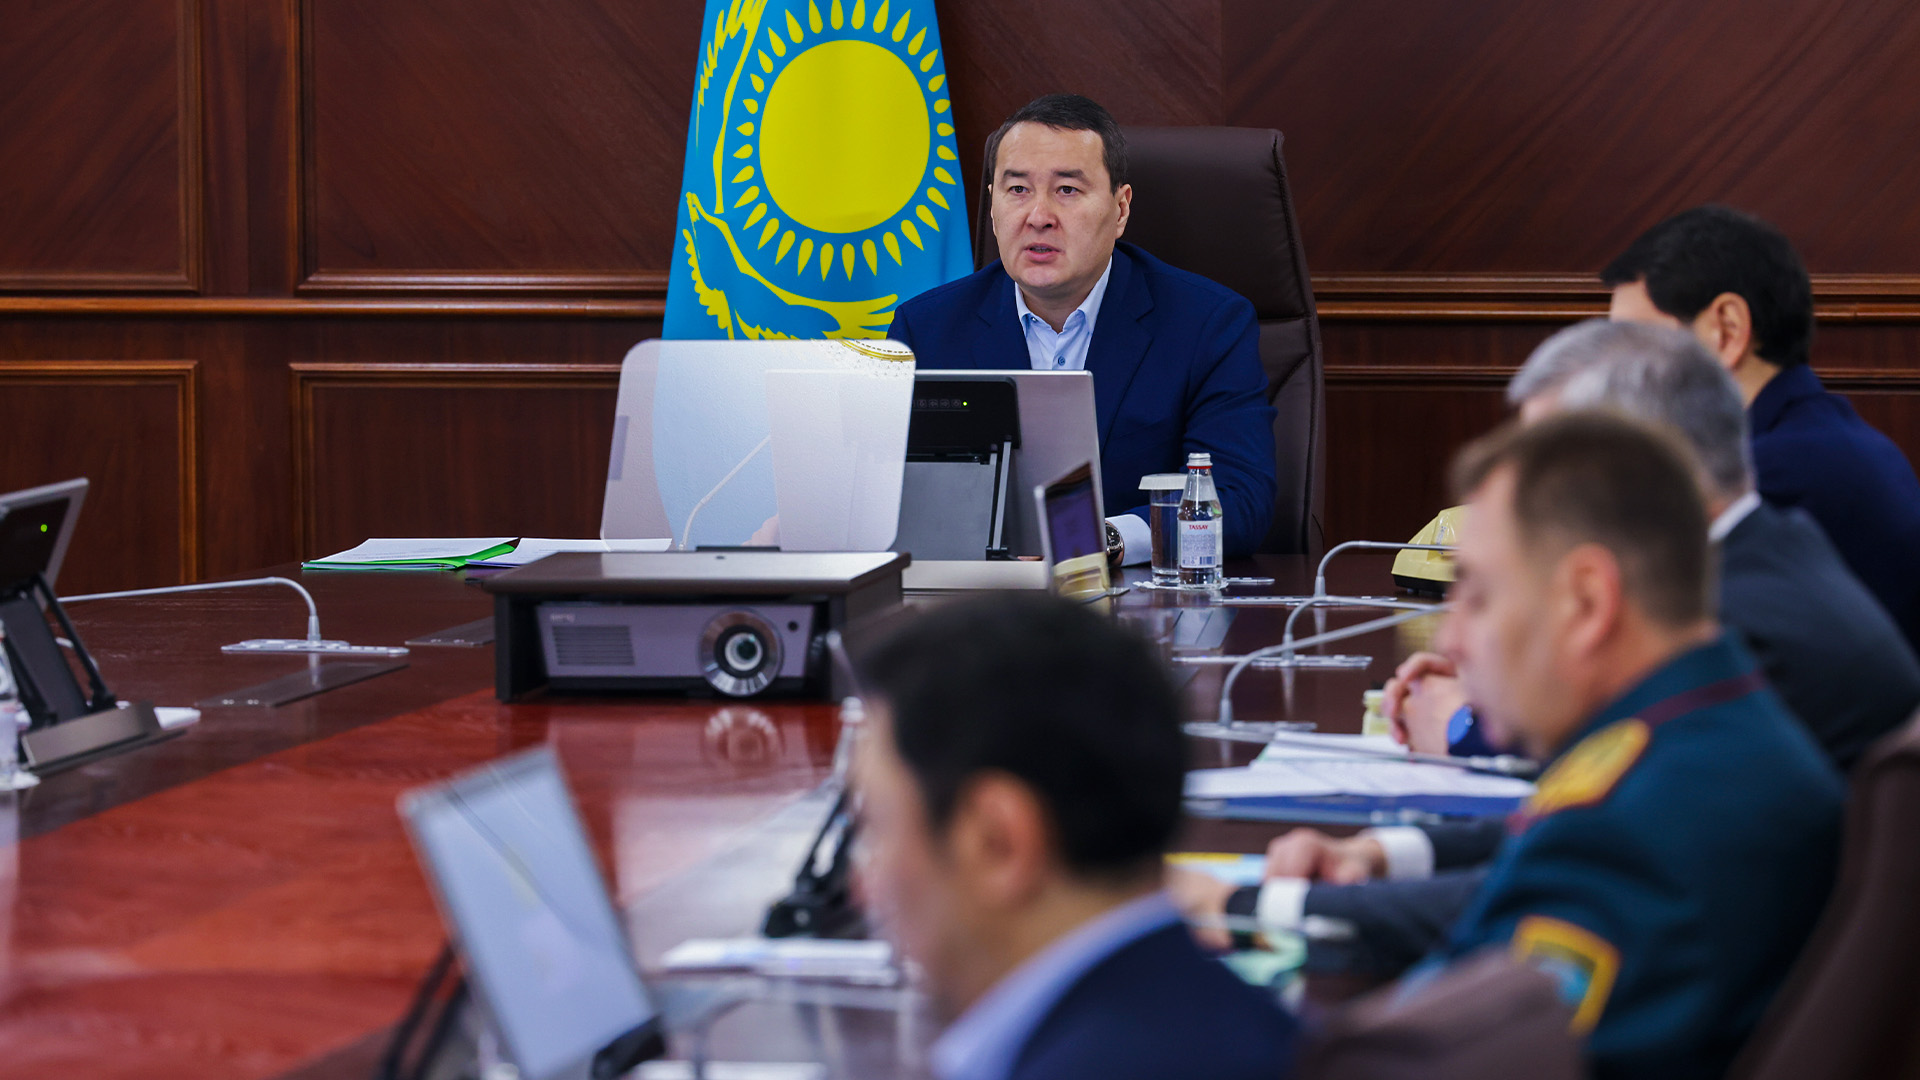 Алихан Смаилов: Госорганам нужно решать вопросы казахстанцев проактивно, не дожидаясь поступления жалоб